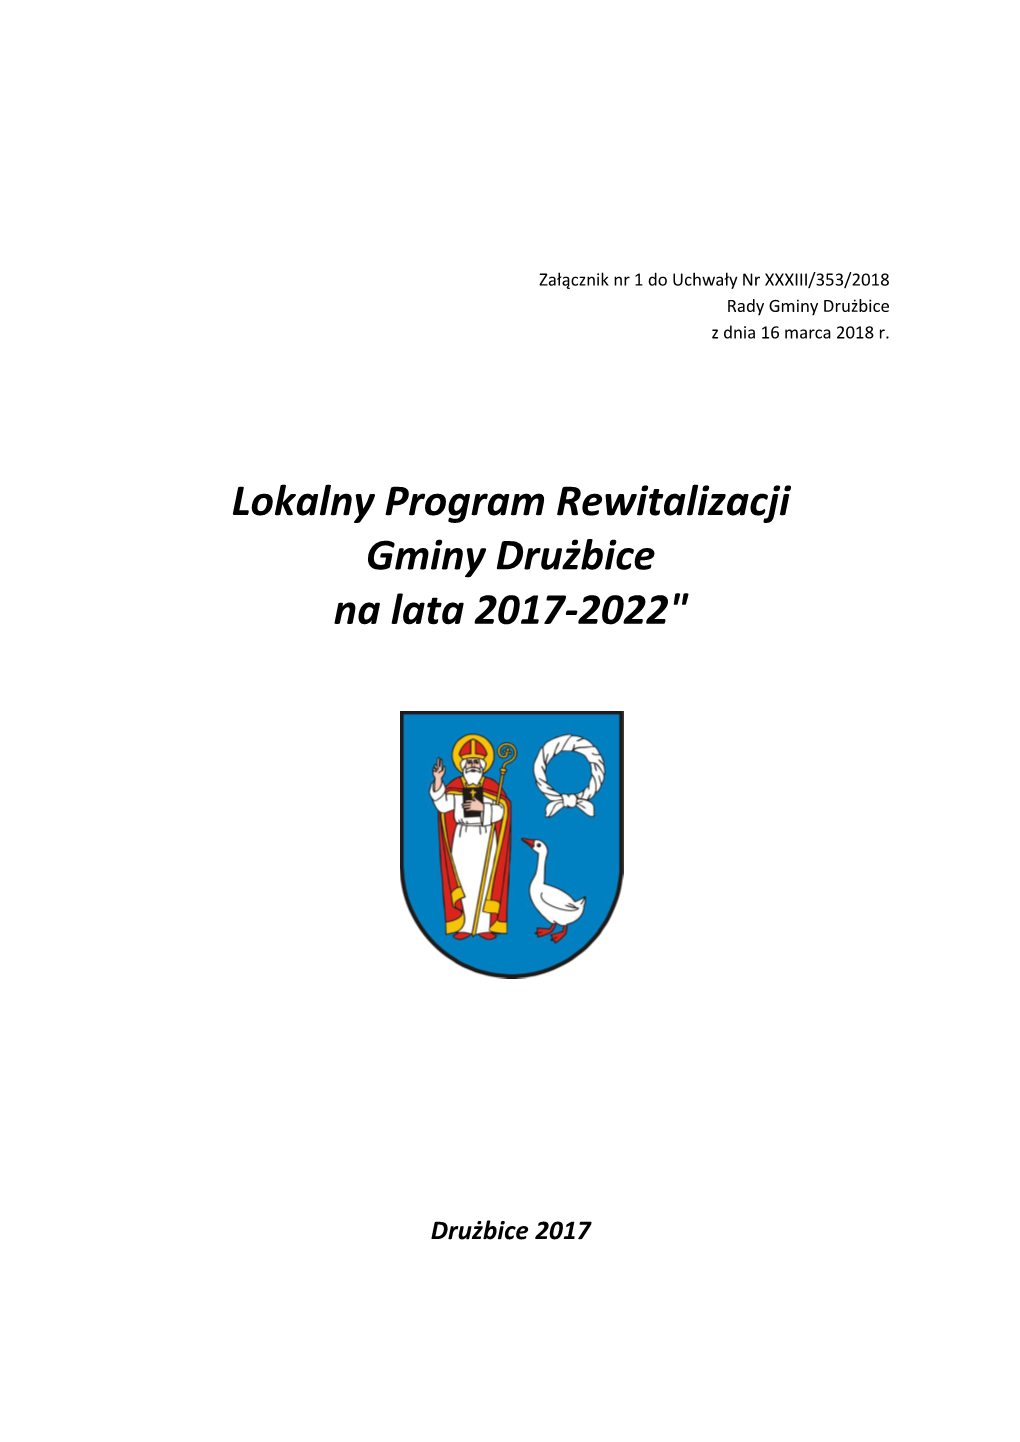 Lokalny Program Rewitalizacji Gminy Drużbice Na Lata 2017-2022"